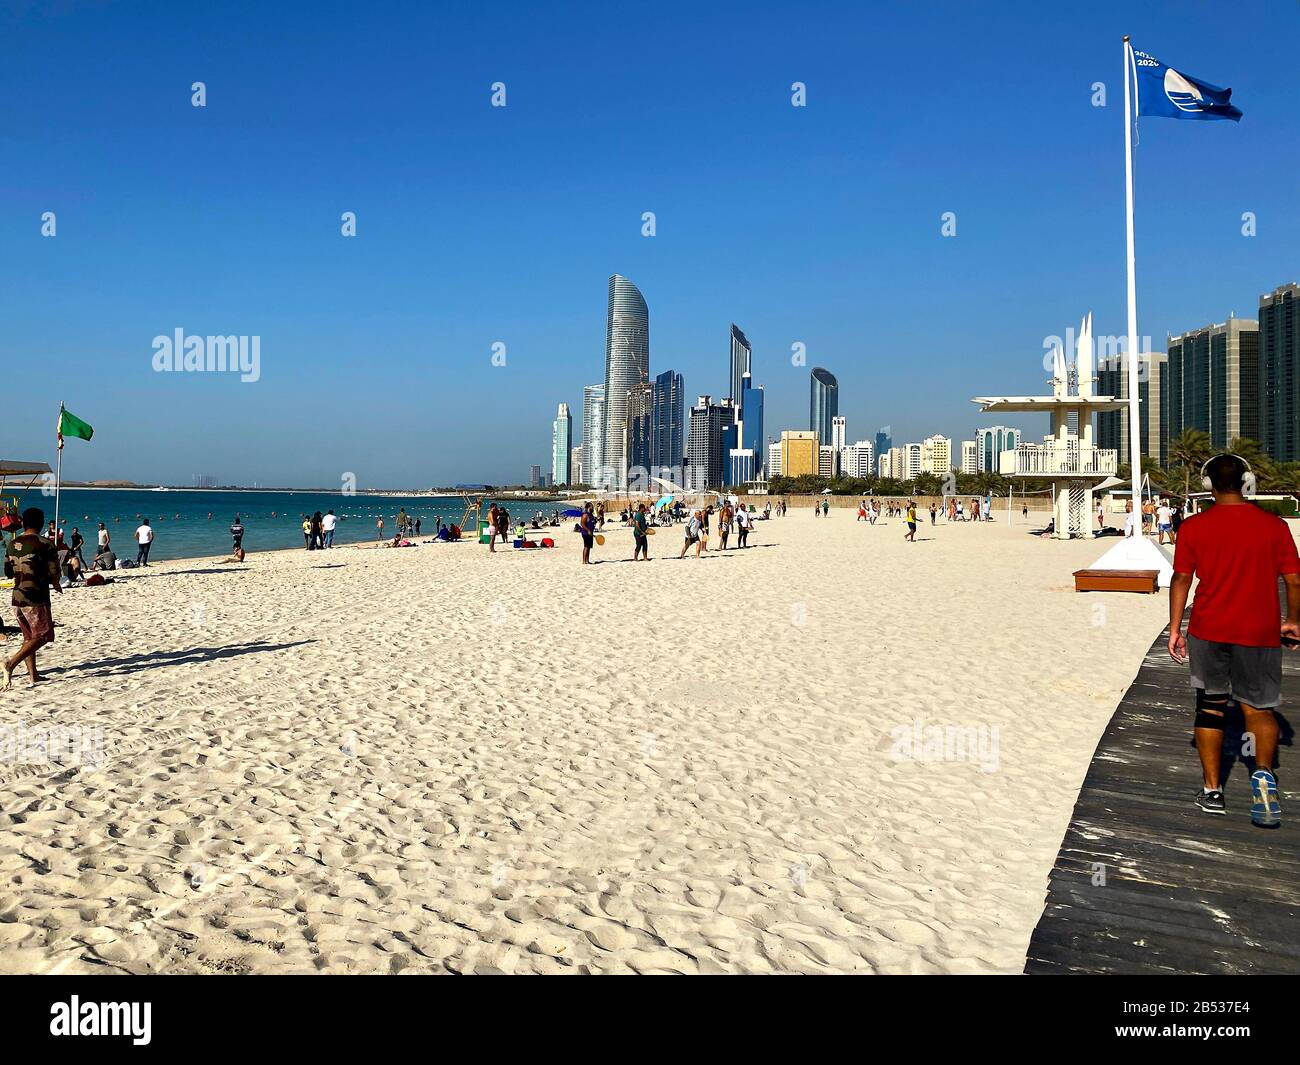 Abu Dhabi / Emirats Arabes Unis - 6 mars 2020: Célèbre plage publique de Corniche avec de nombreuses personnes. Plage urbaine à Abu Dhabi Banque D'Images